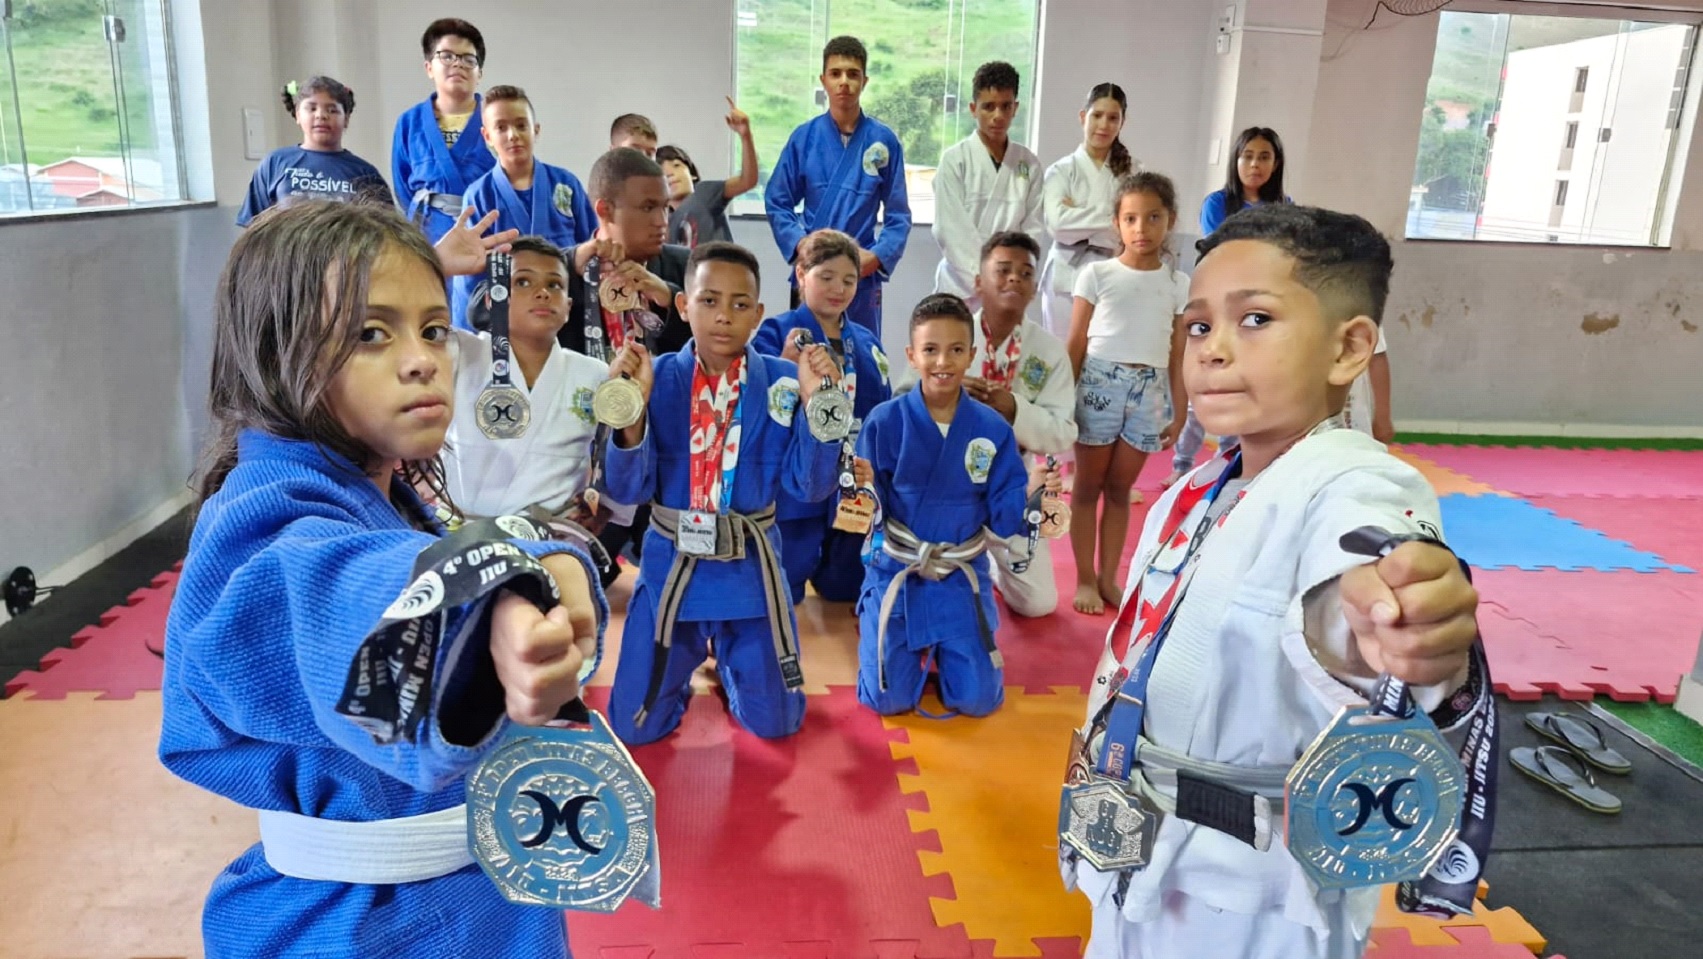 Atletas da Escola de Jiu-Jitsu Jean Chaves se destacam em Raul Soares